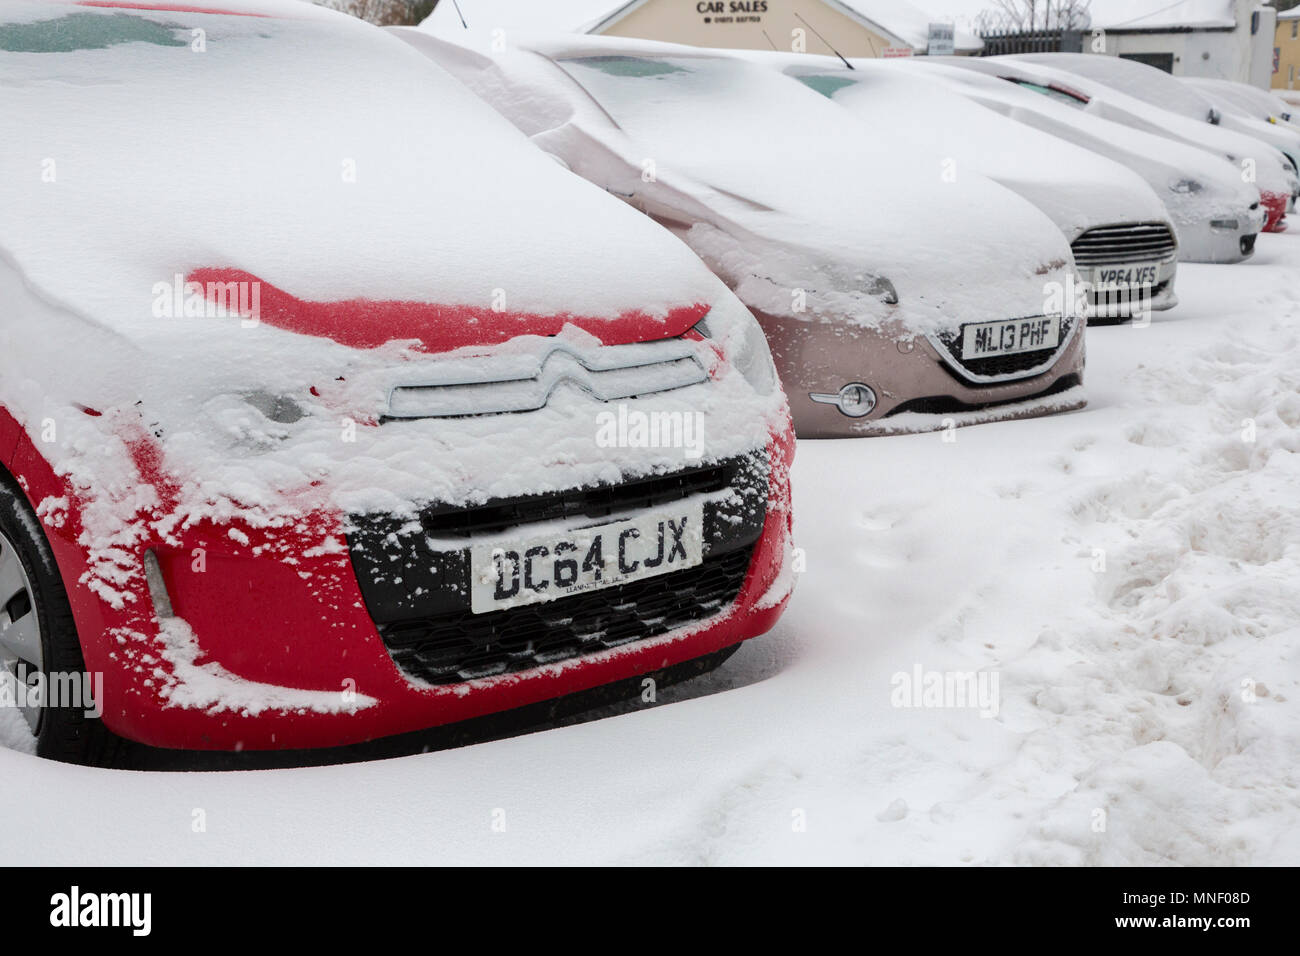 Achat voitures en exposition avant-cour couverte de neige, Llanfoist. Abergavenny, Pays de Galles, Royaume-Uni Banque D'Images